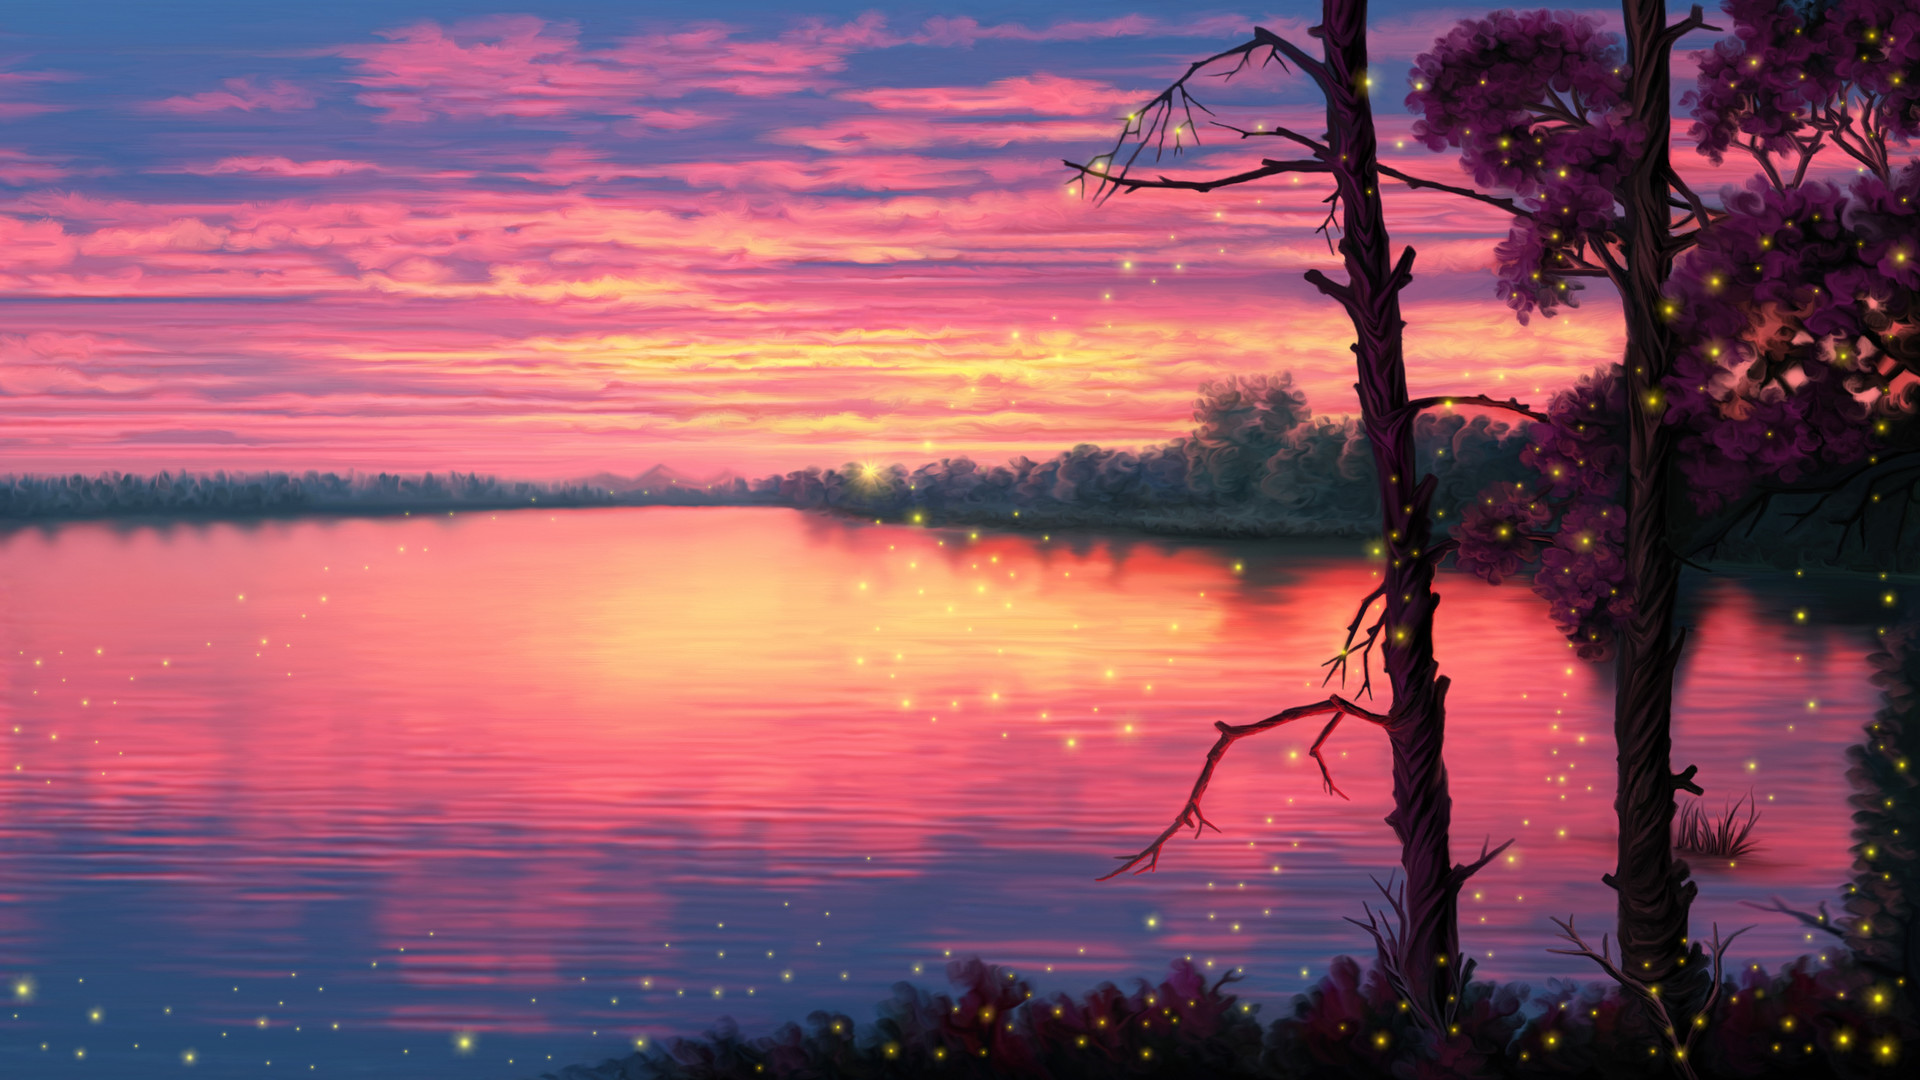 Firefly Lake Landscape Scenery Sunset Water 1920x1080